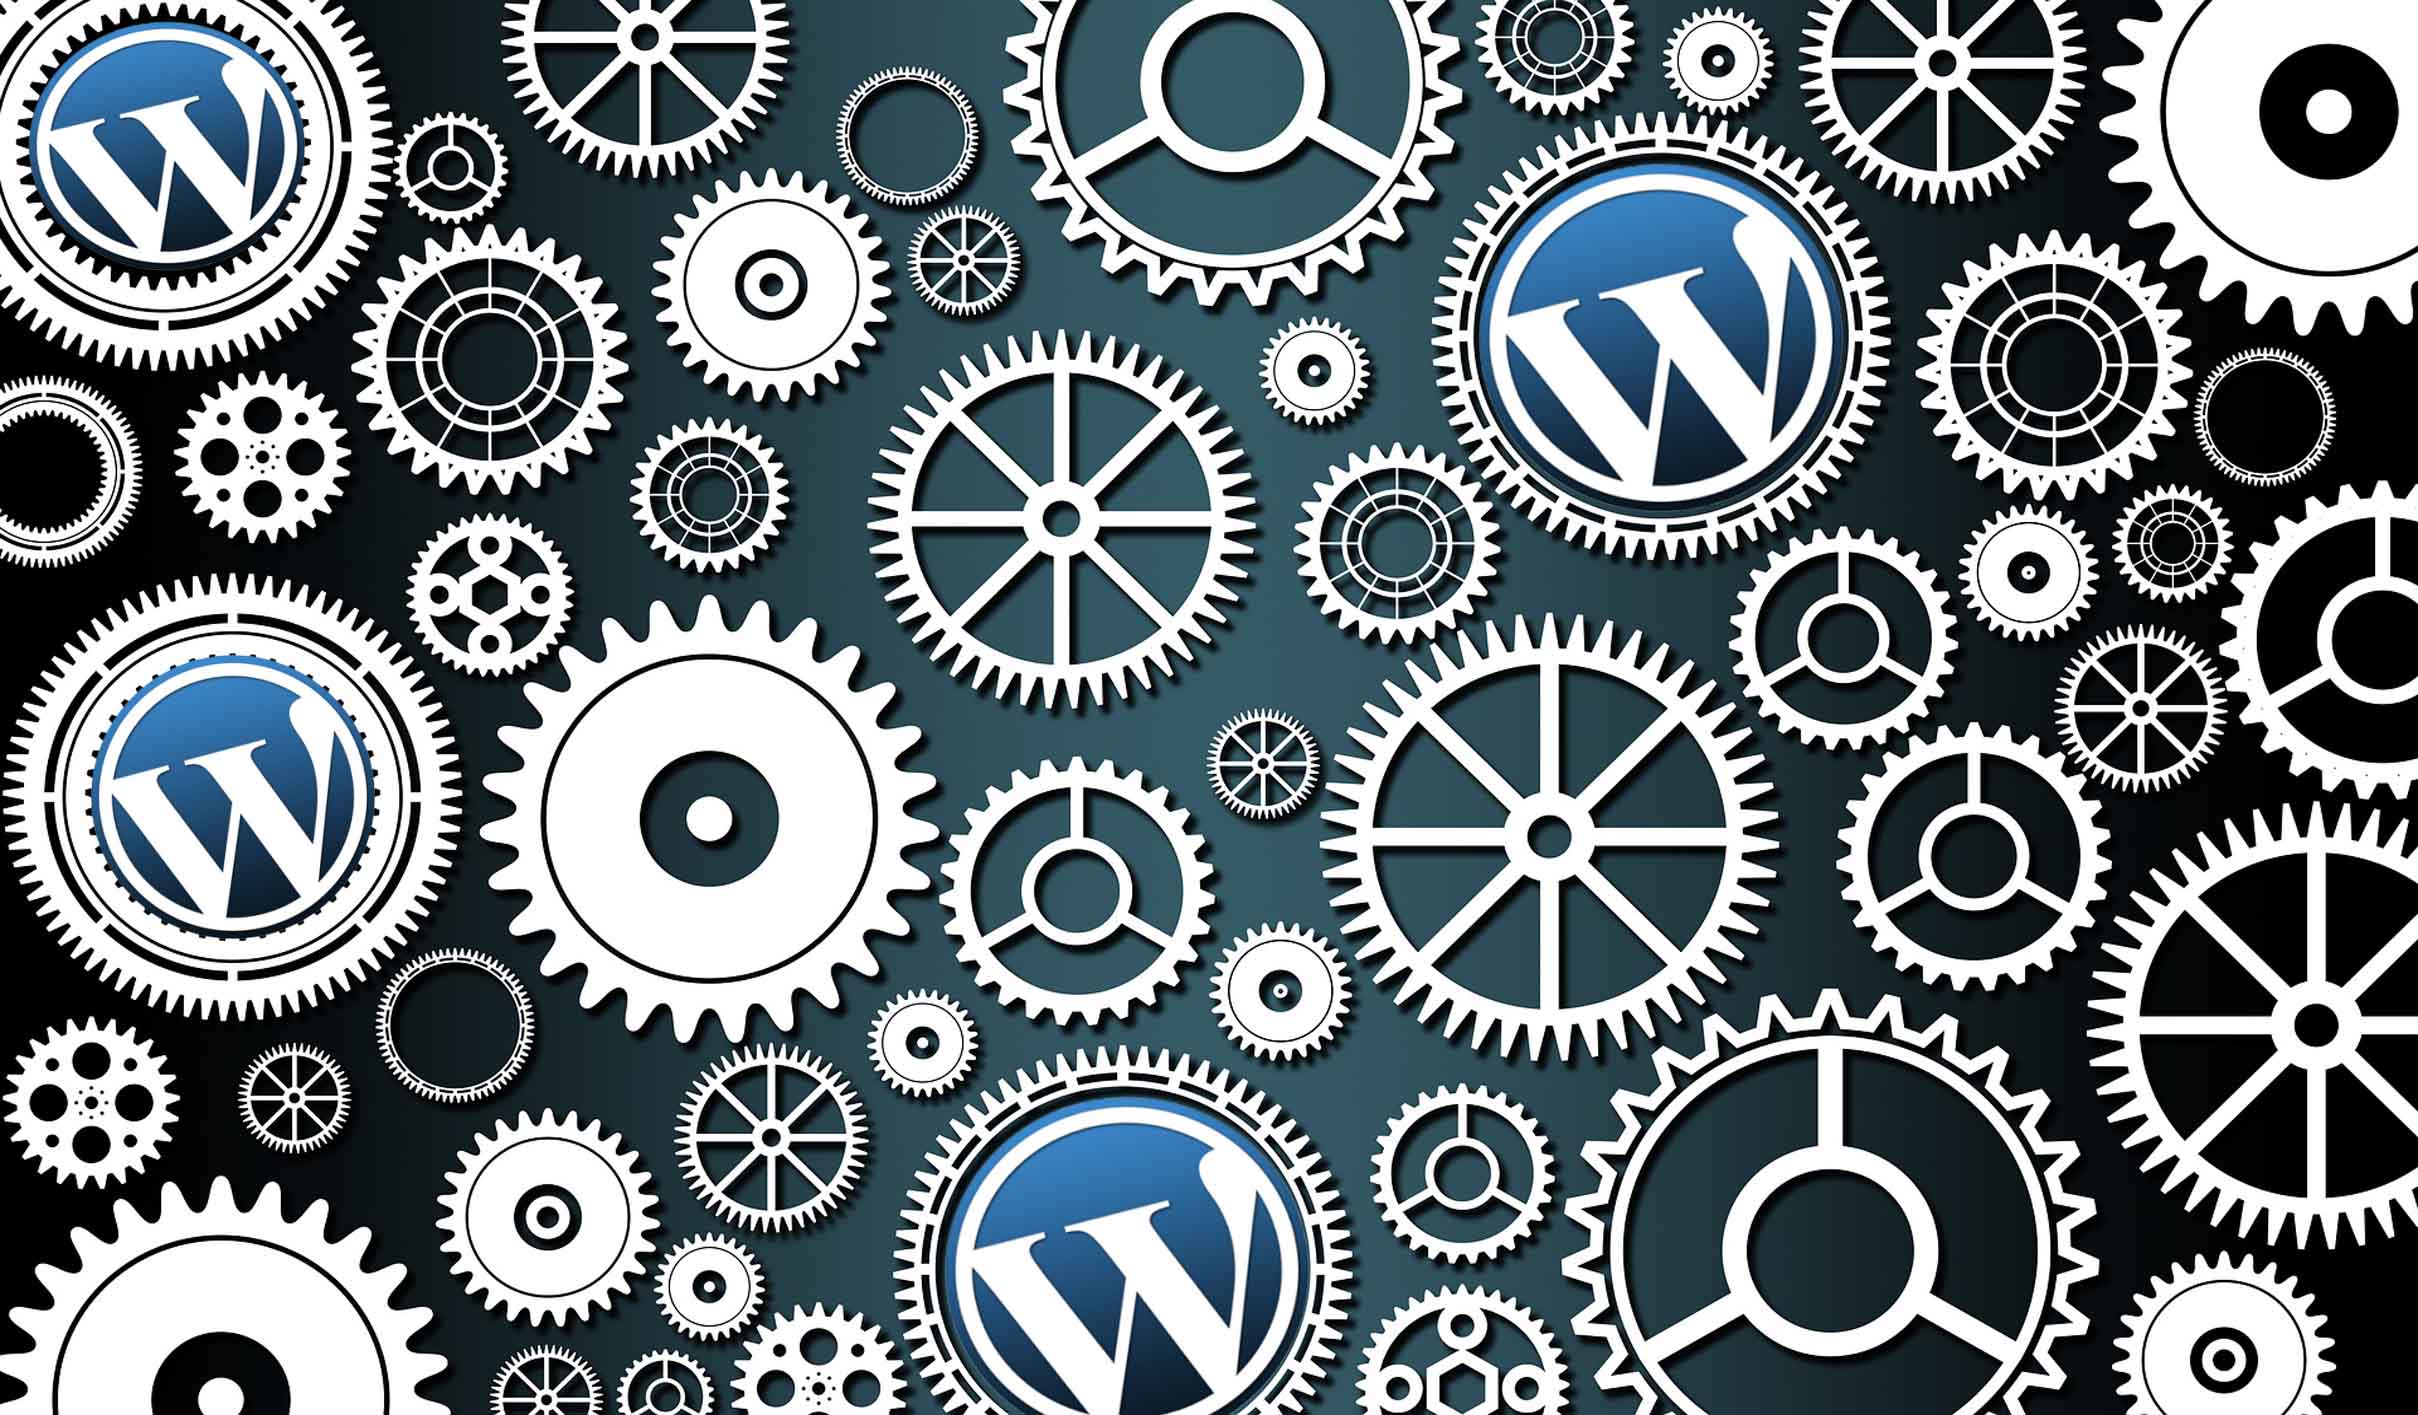 mantenimiento y seguridad wordpress